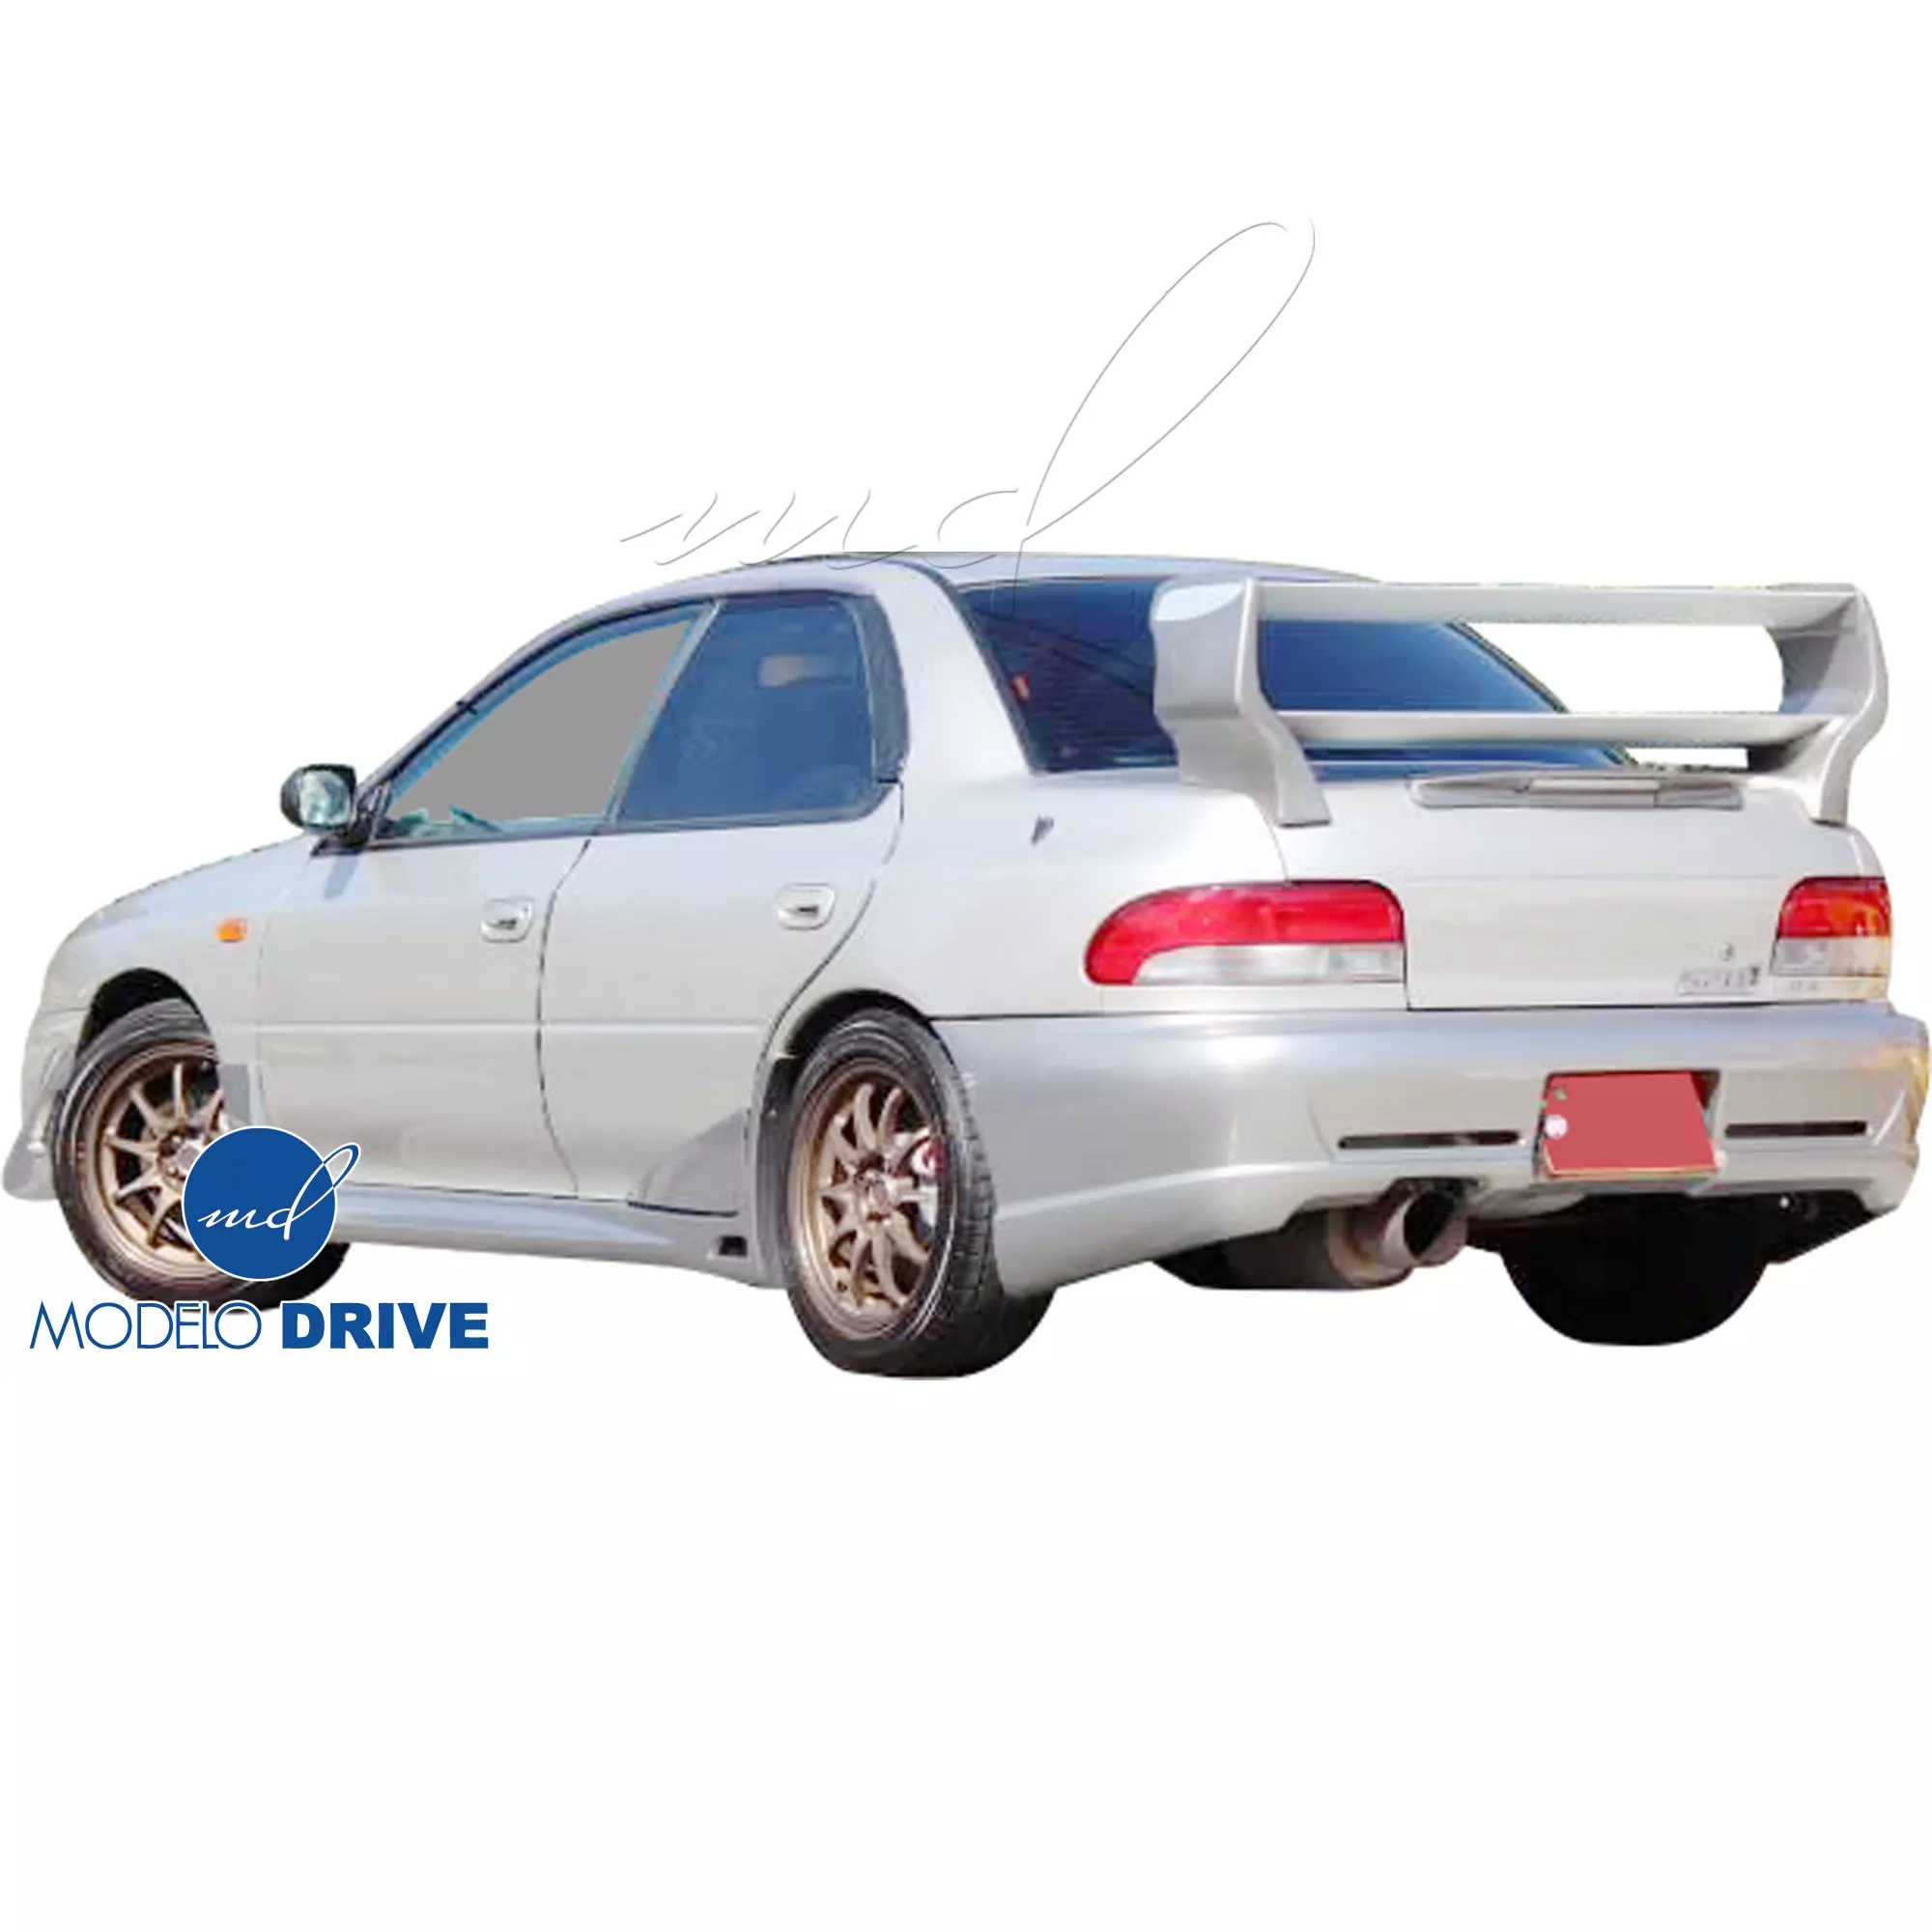 ModeloDrive FRP S201 Look Spoiler Wing > Subaru Impreza (GC8) 1993-2001 > 2/4dr - Image 4